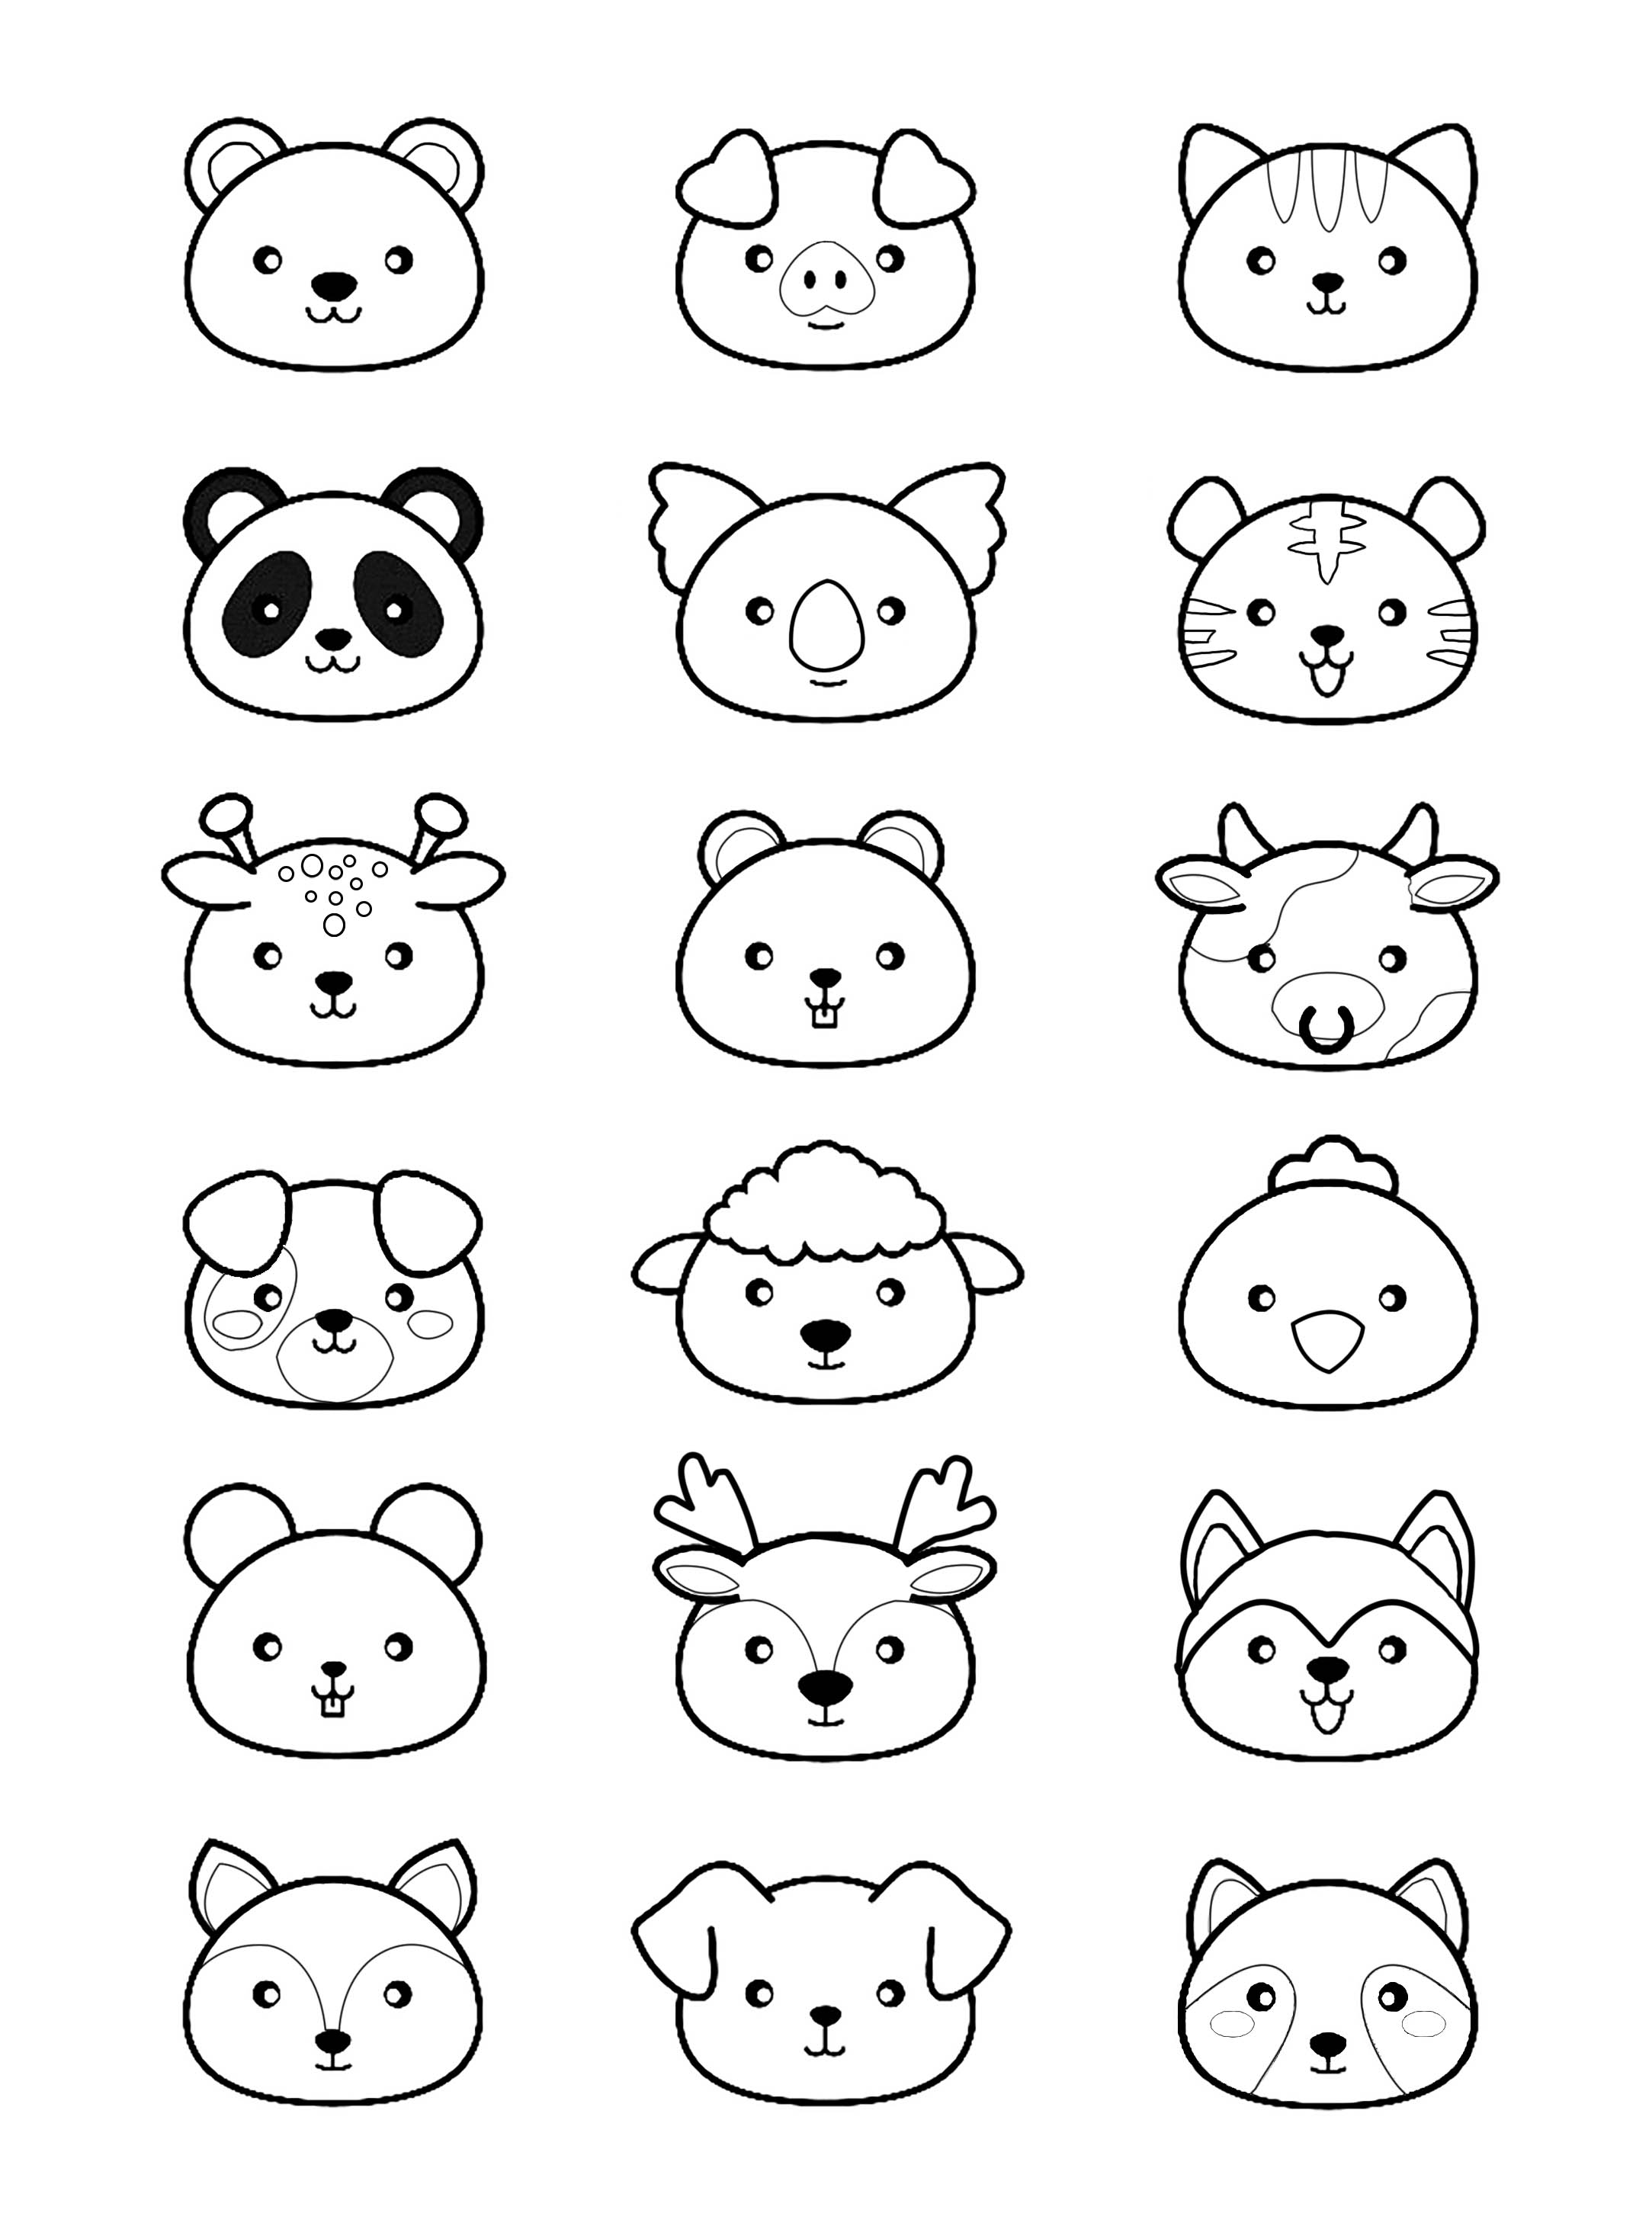 Desenhos grátis para colorir de Animais para imprimir e colorir, para crianças